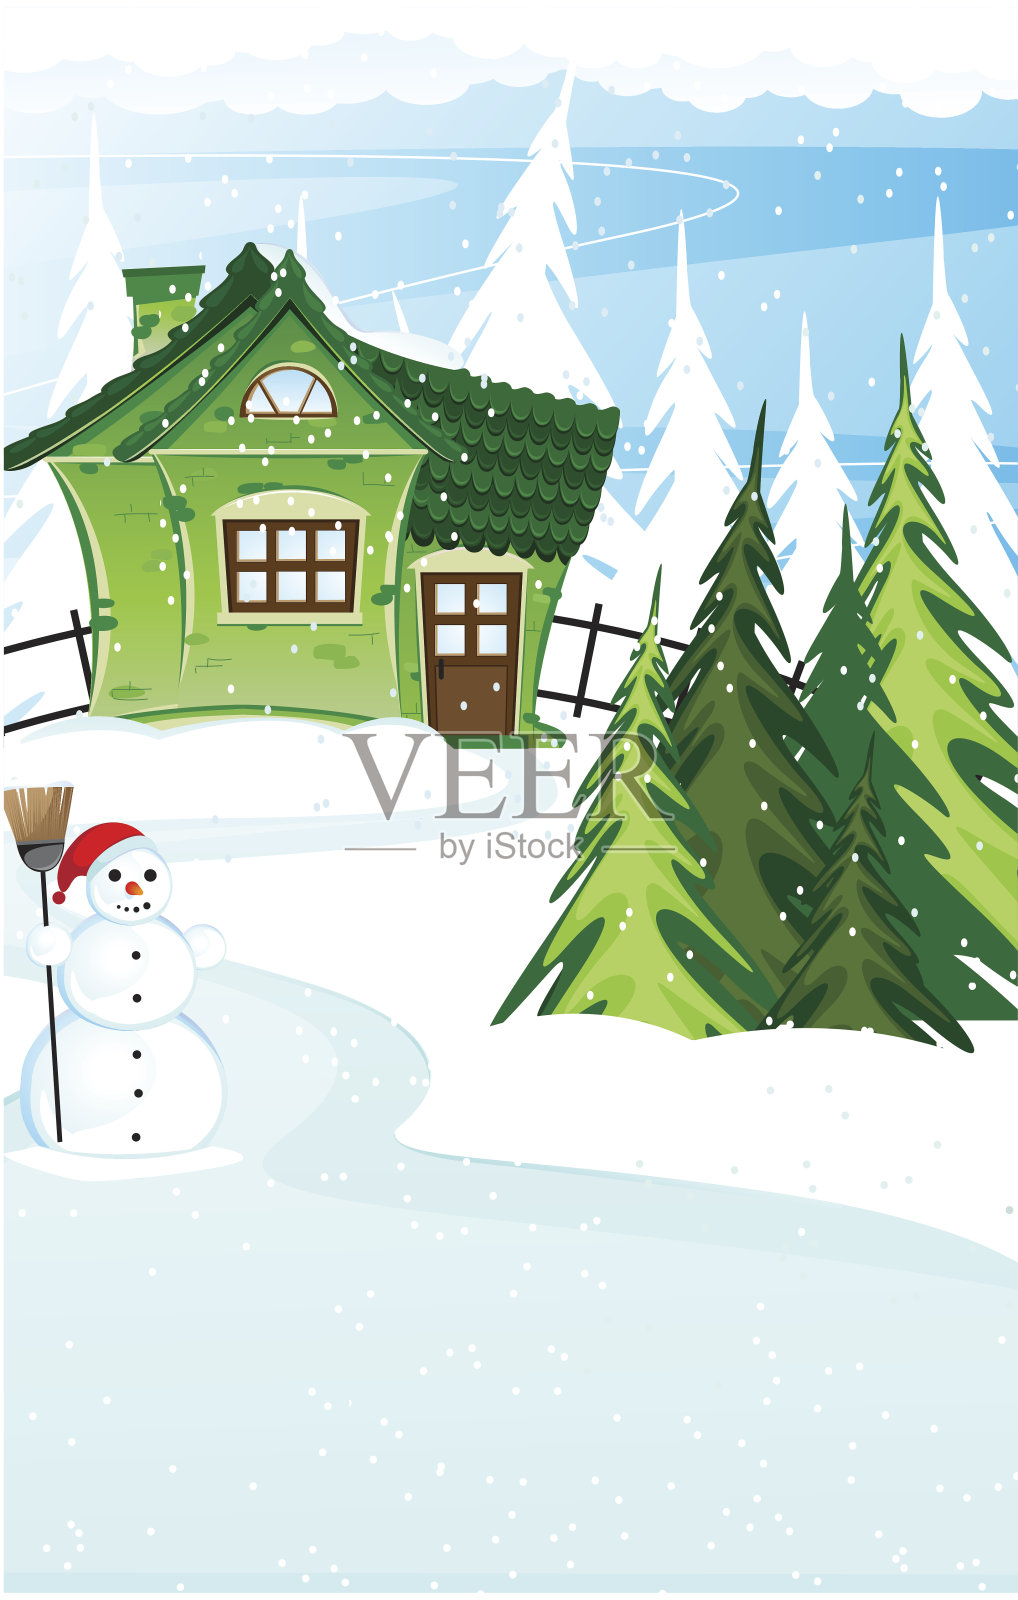 砖房和雪人戴着圣诞帽插画图片素材